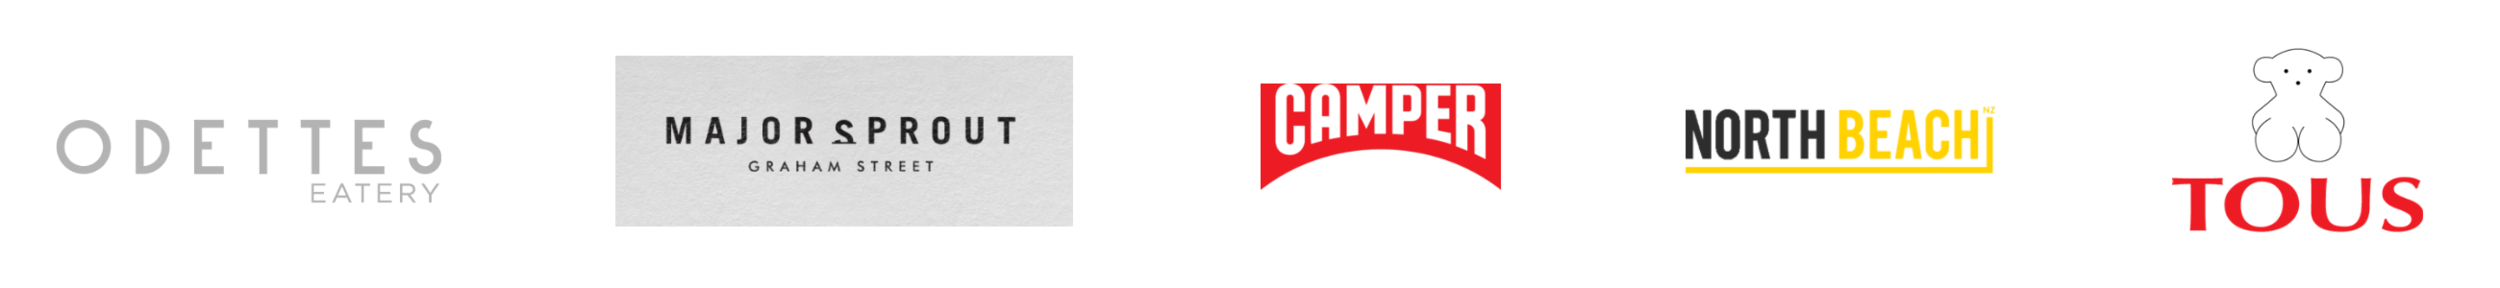 Logo_Carousel_2.png